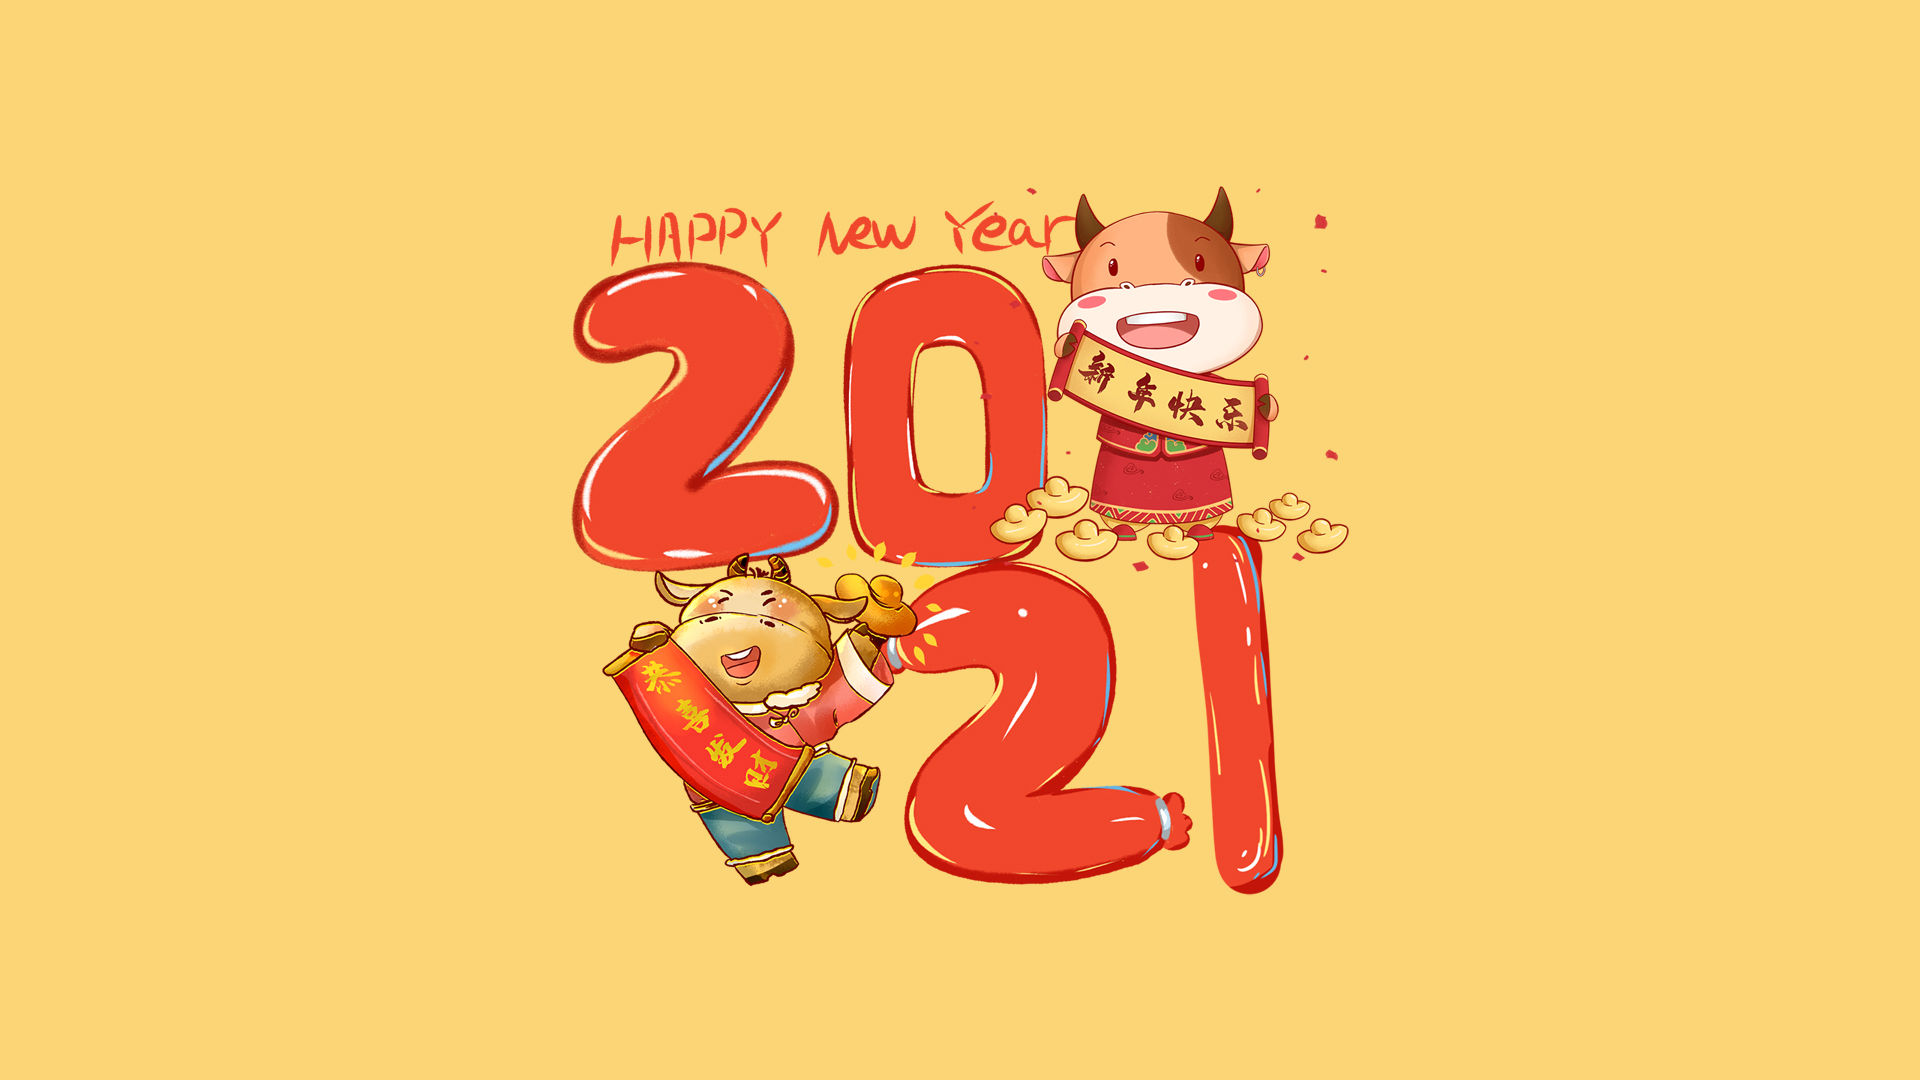 手拿新年快乐和恭喜发财对联的 可爱卡通牛壁纸图片 <span style='color:red;'>2021</span>文字